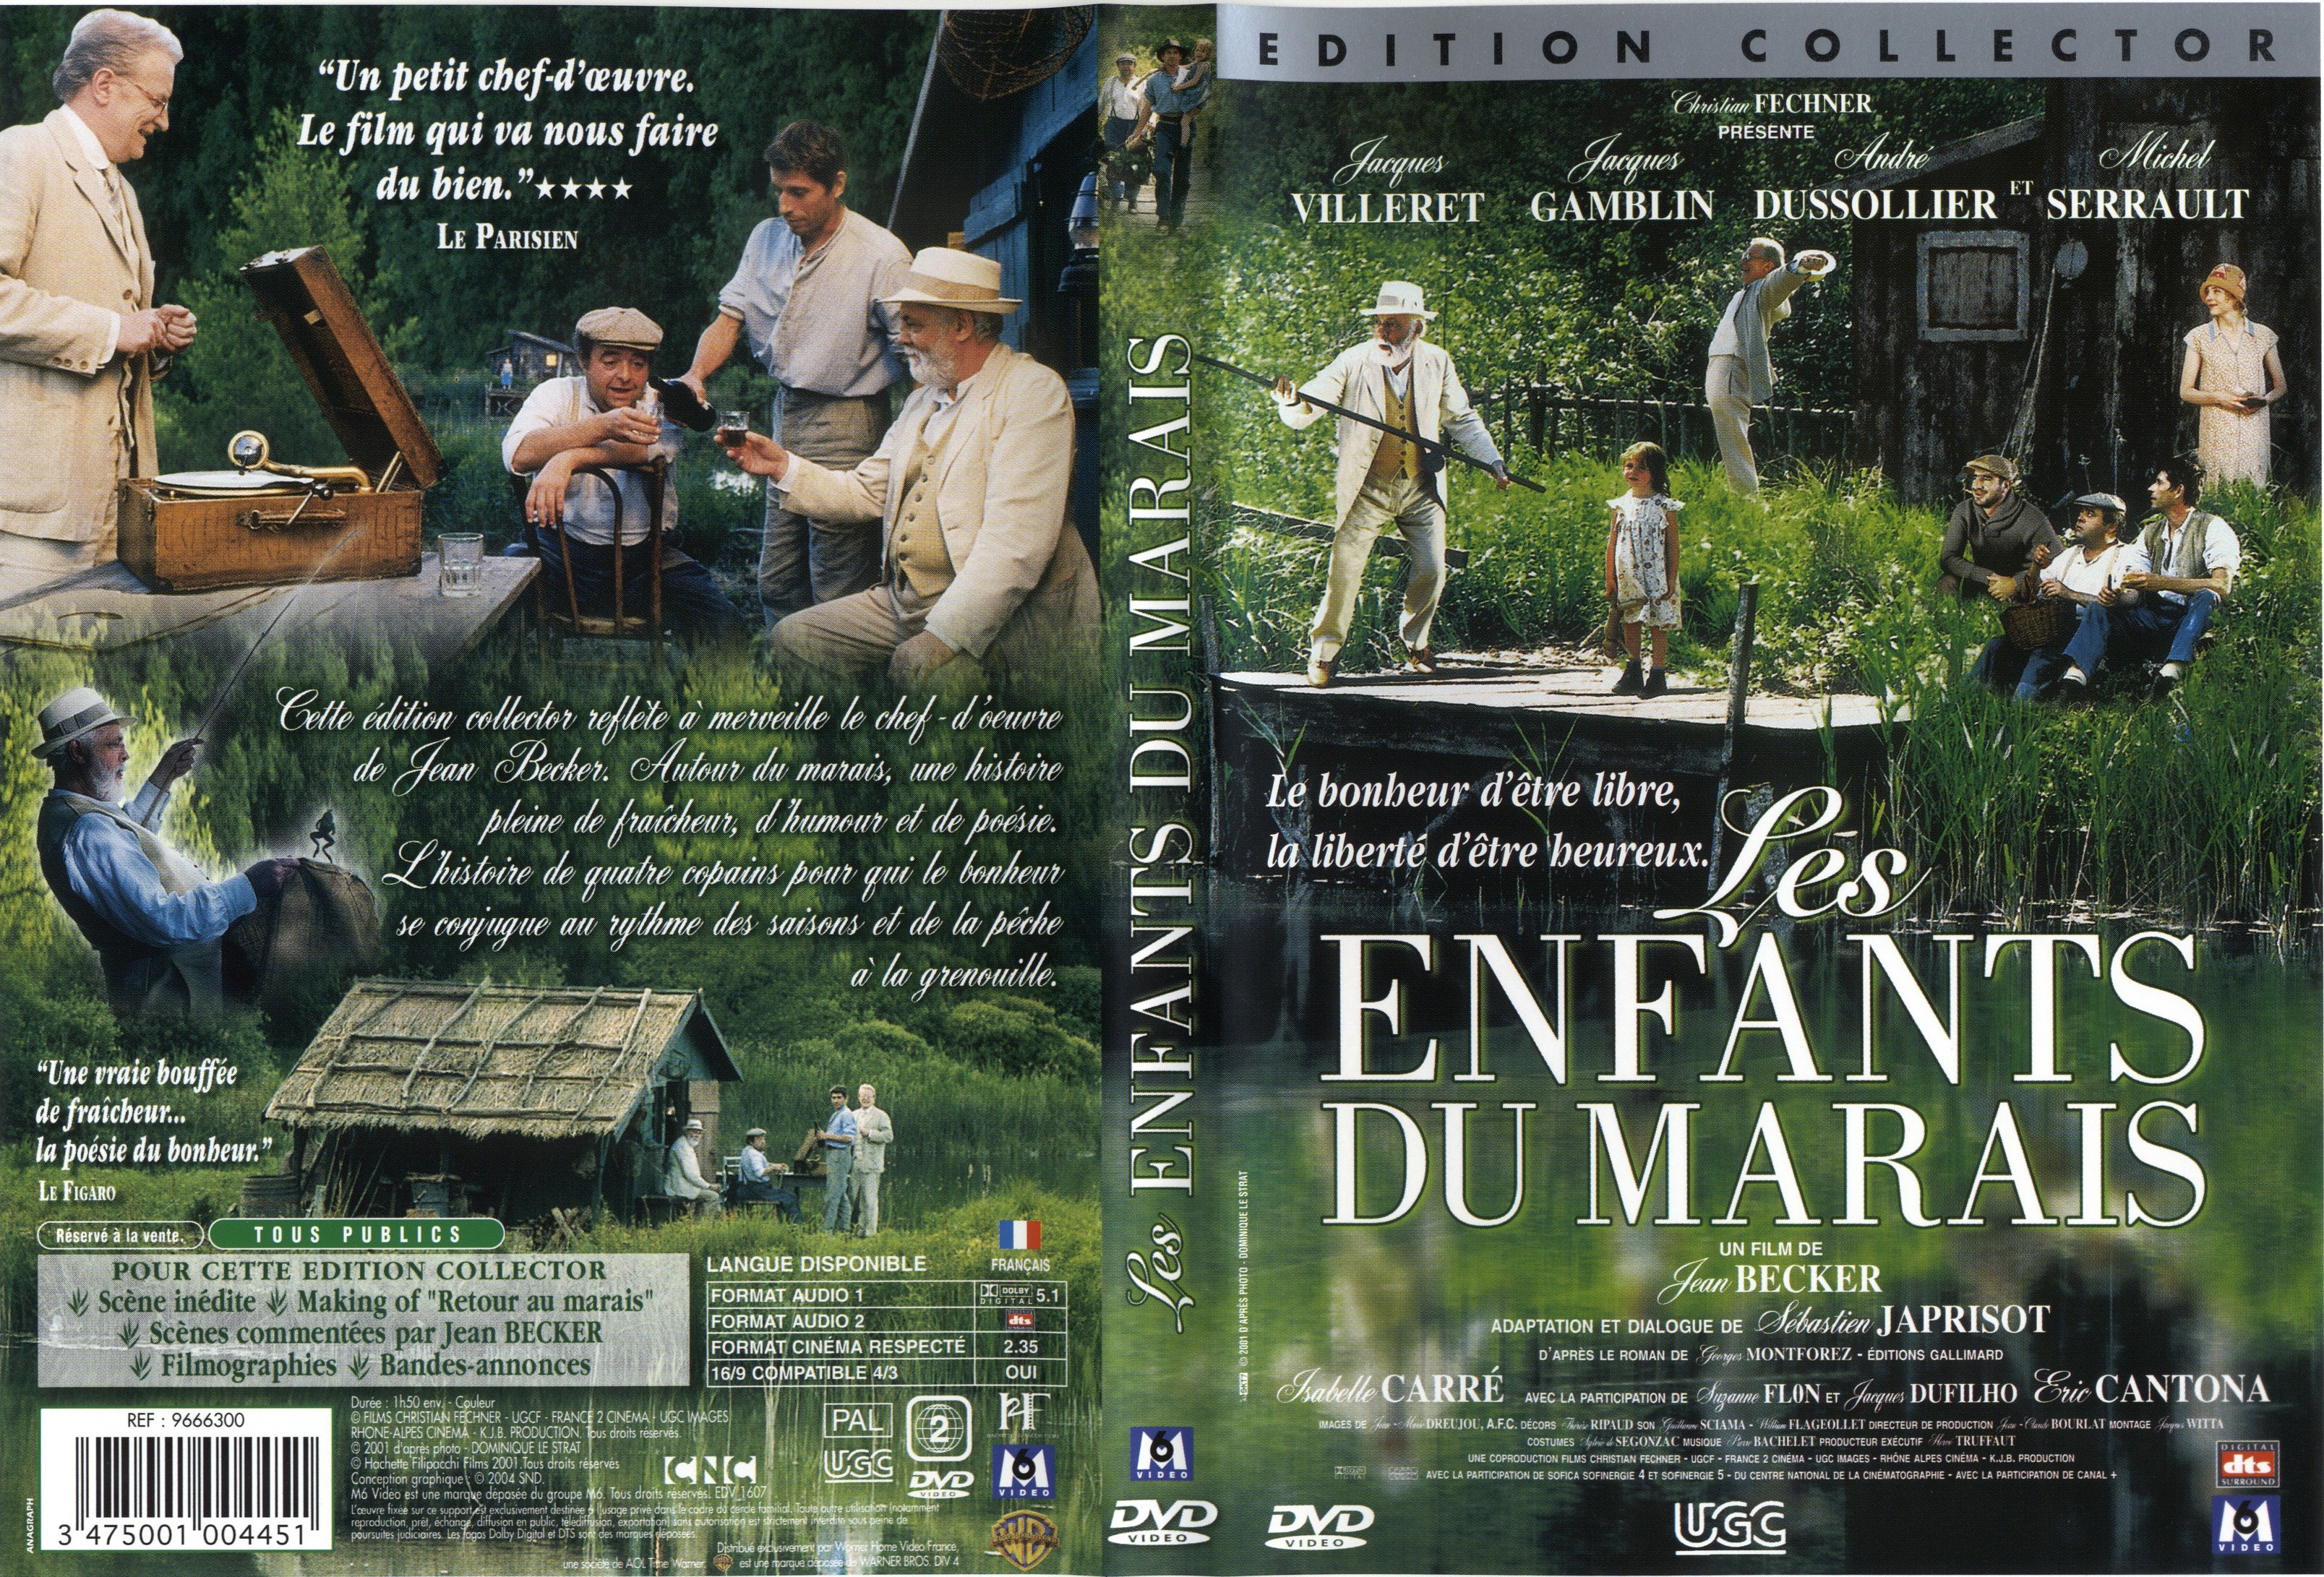 Jaquette DVD Les enfants du marais v3